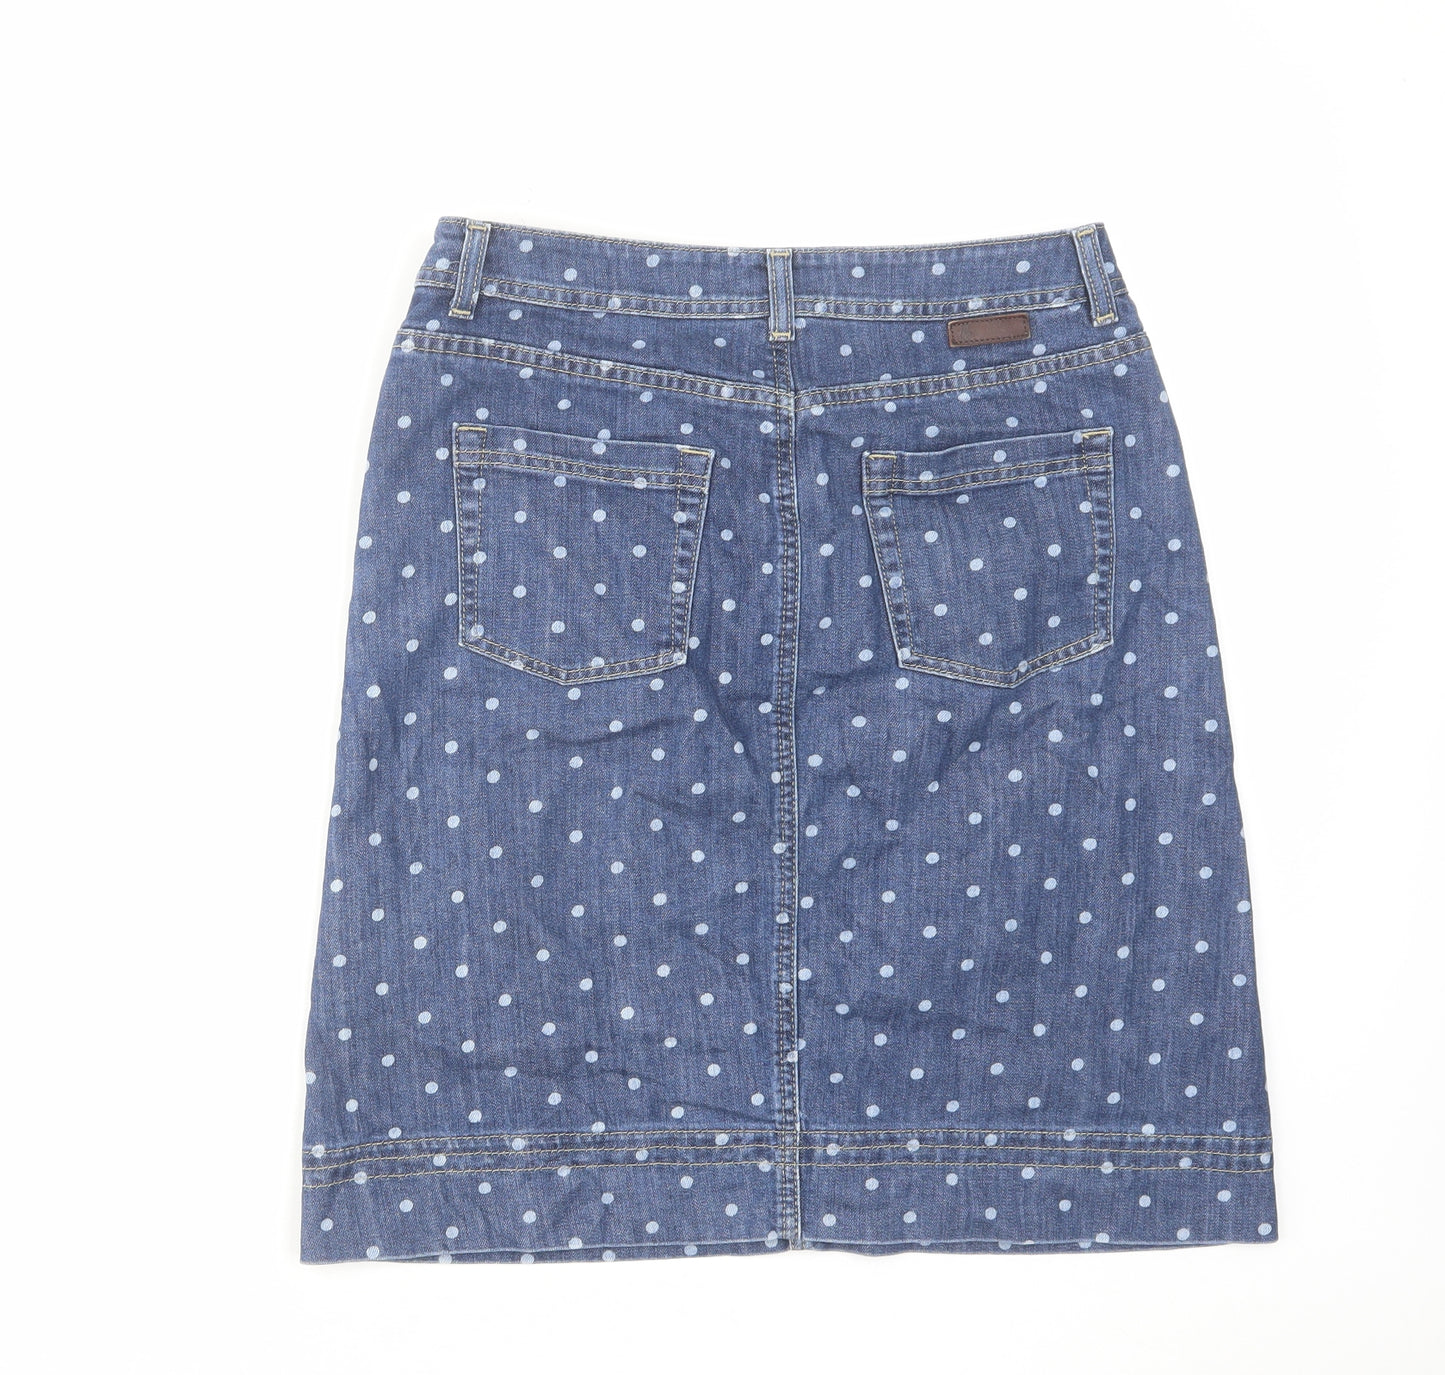 Boden Womens Blue Polka Dot Cotton A-Line Skirt Size 10 Zip